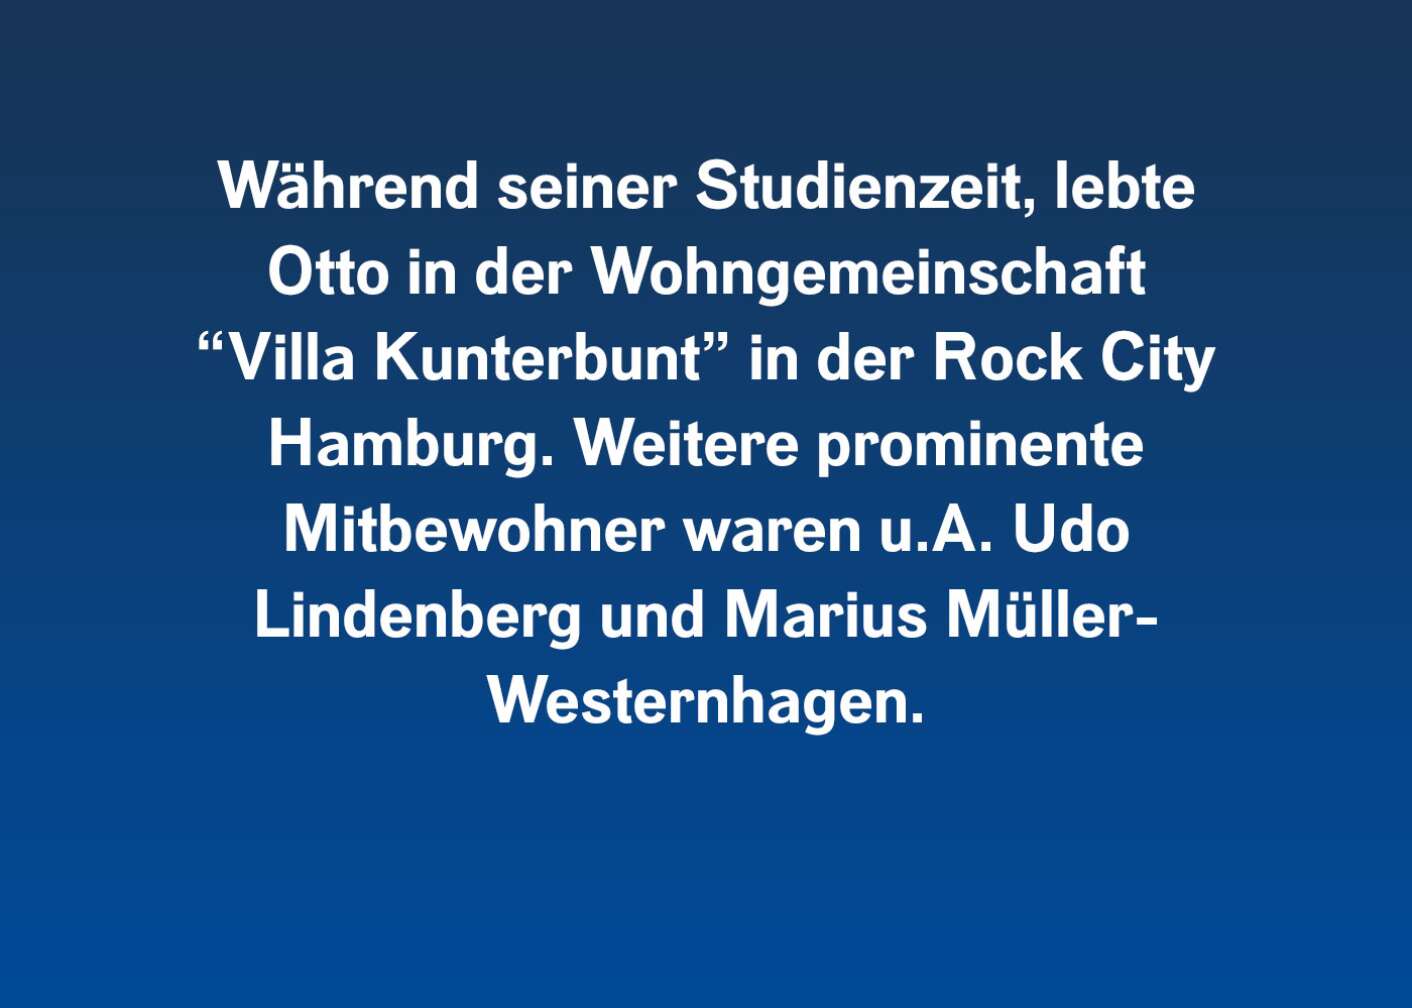 Während seiner Studienzeit, lebte Otto in der Wohngemeinschaft "Villa Kunterbunt" in der Rock City Hamburg. Weitere prominente Mitbewohner waren u.A. Udo Lindenberg und Marius Müller-Westernhagen.